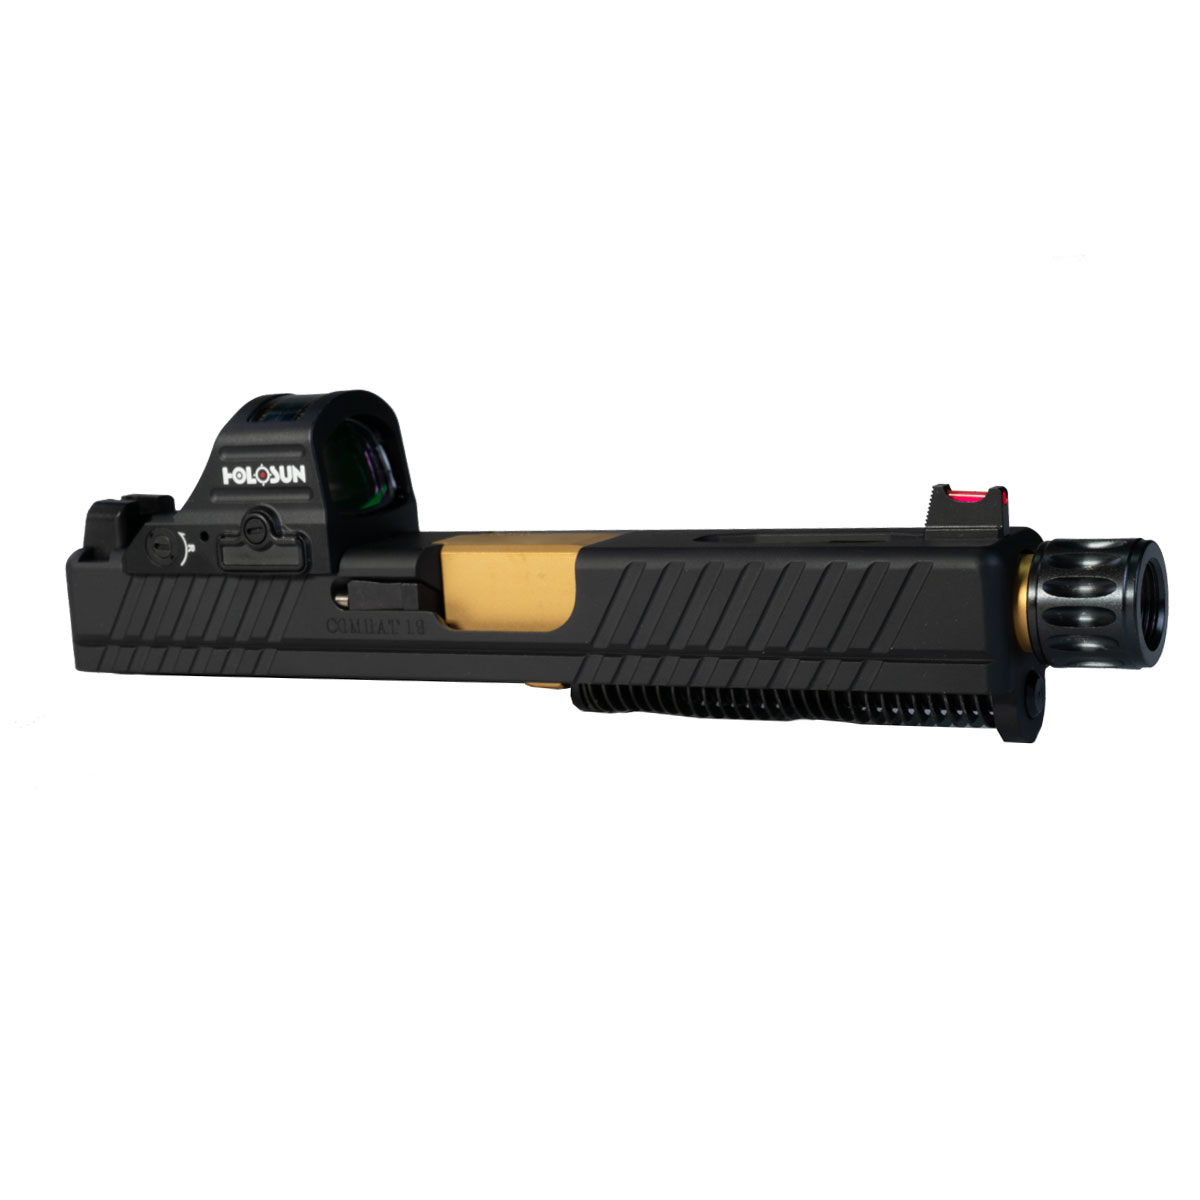 DTT 'Pax Vobiscum w/ HS507C-X2 Red Dot' 9mm Complete Slide Kit - Glock 19 Gen 1-3 Compatible